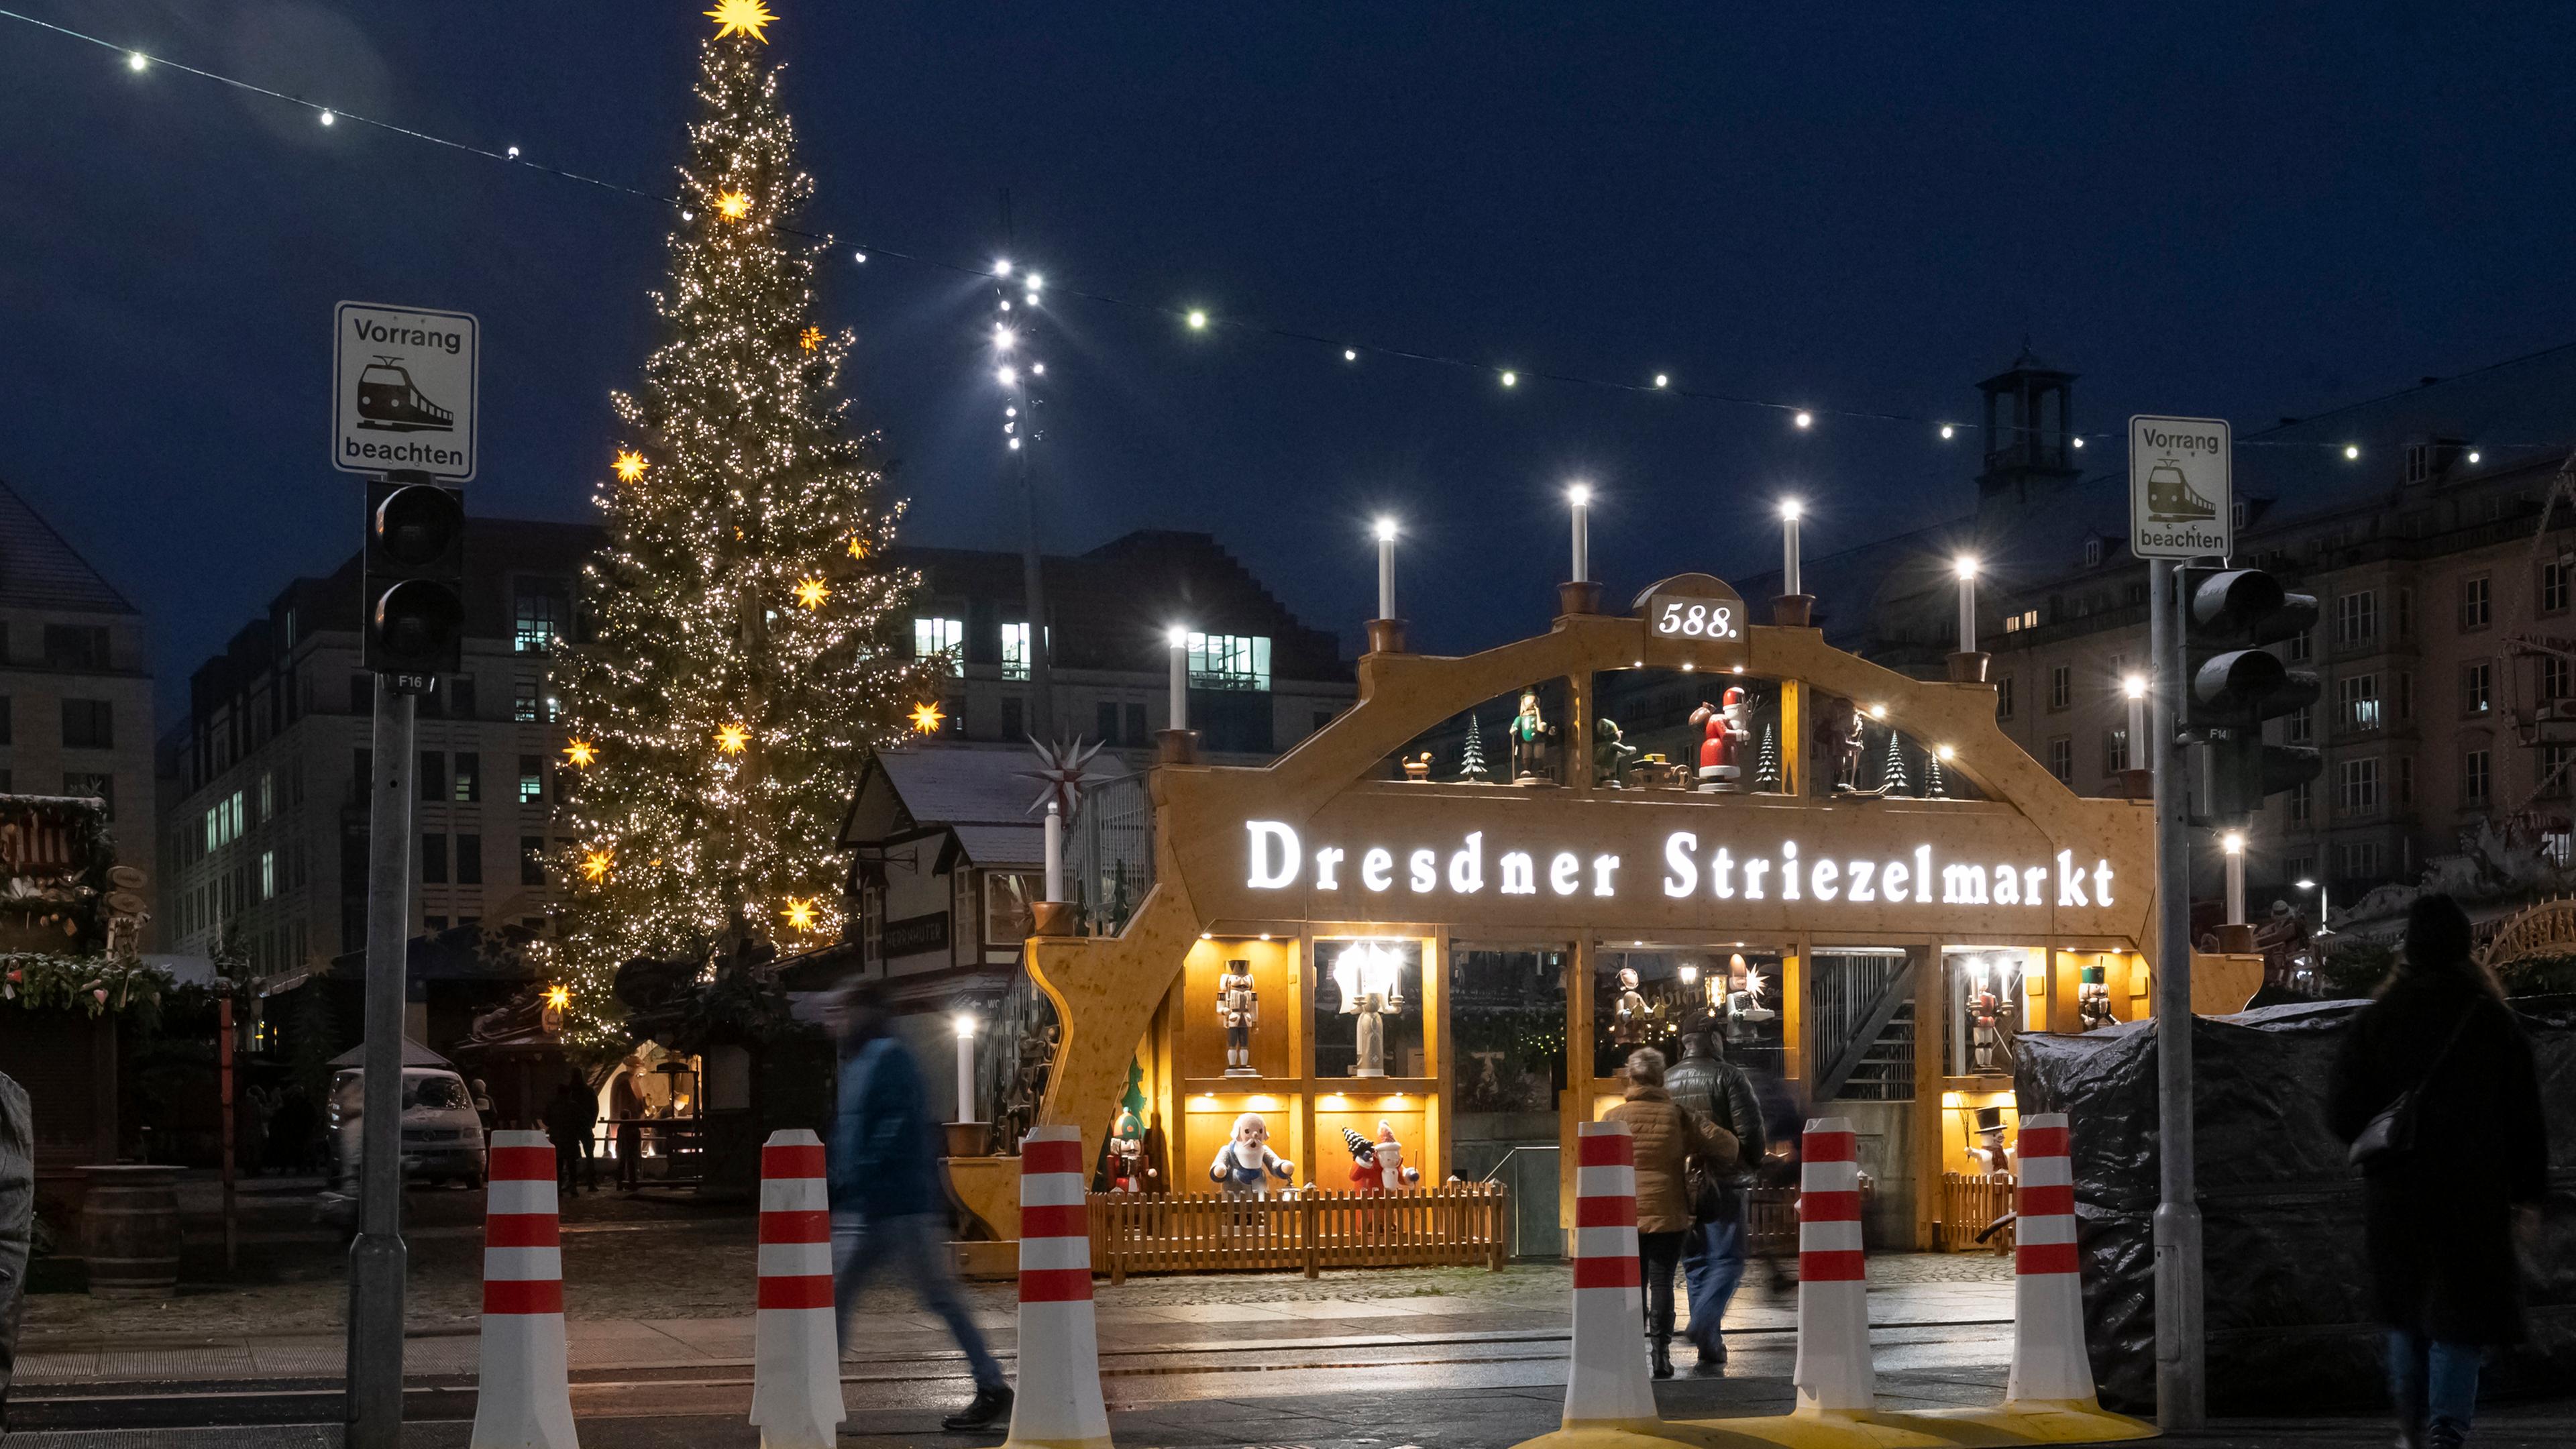 Beleuchtungsprobe auf dem Dresdner Striezelmarkt. Beleuchtet sind der große Schwibbogen und die Striezelmarkttanne.